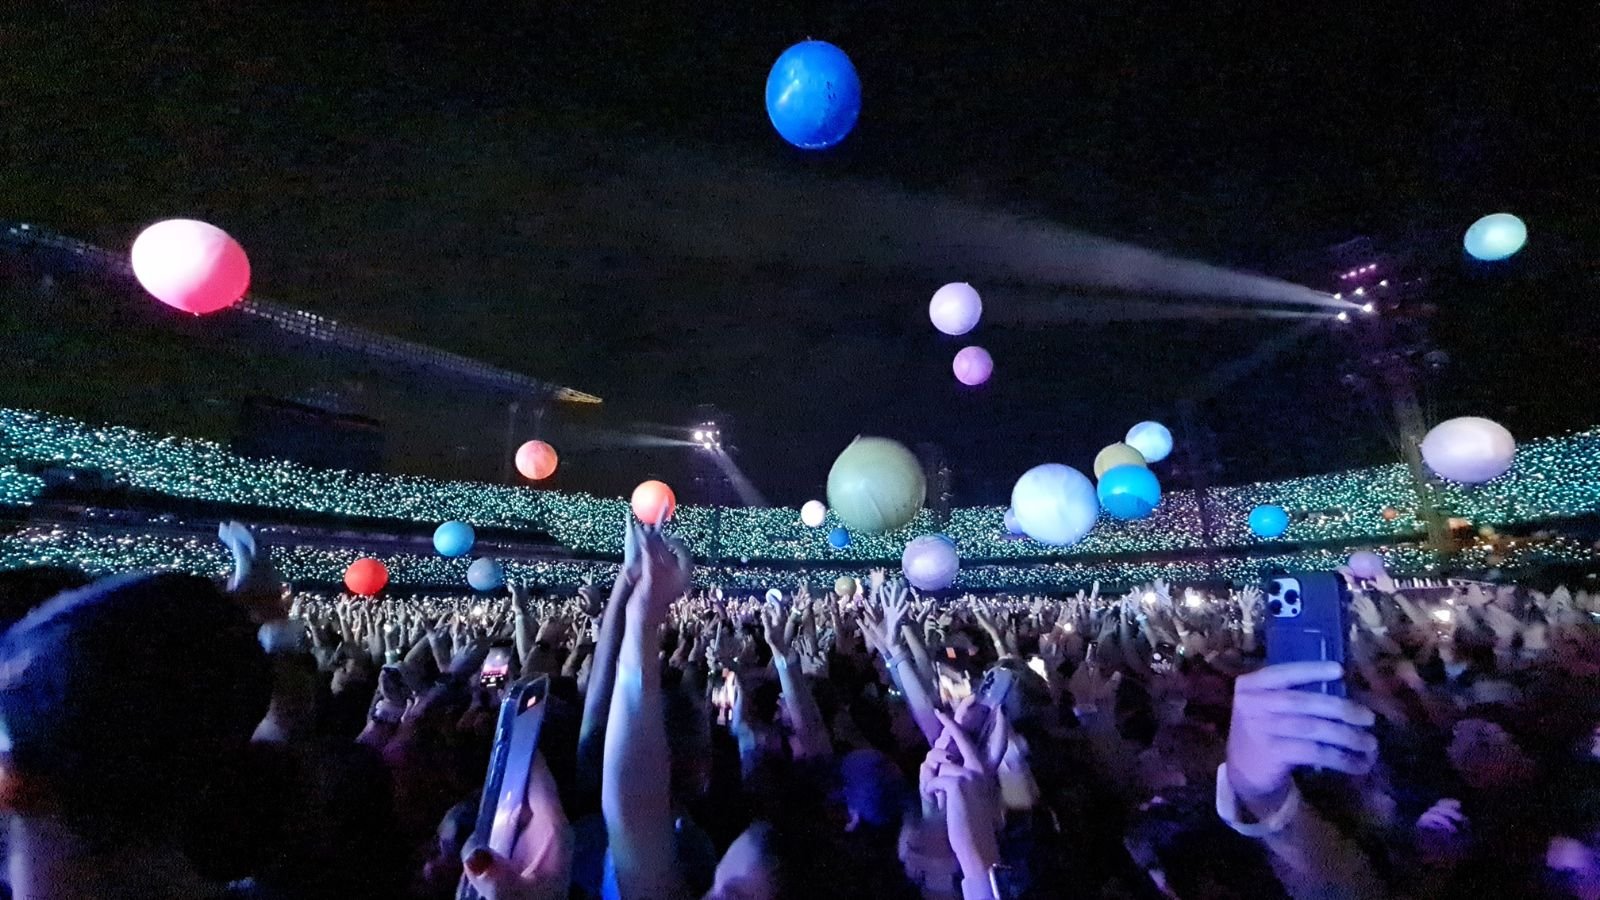 Bolas foram lançadas pela plateia em show do Coldplay. Foto: Isabela Frasinelli/iG - 10.03.2023